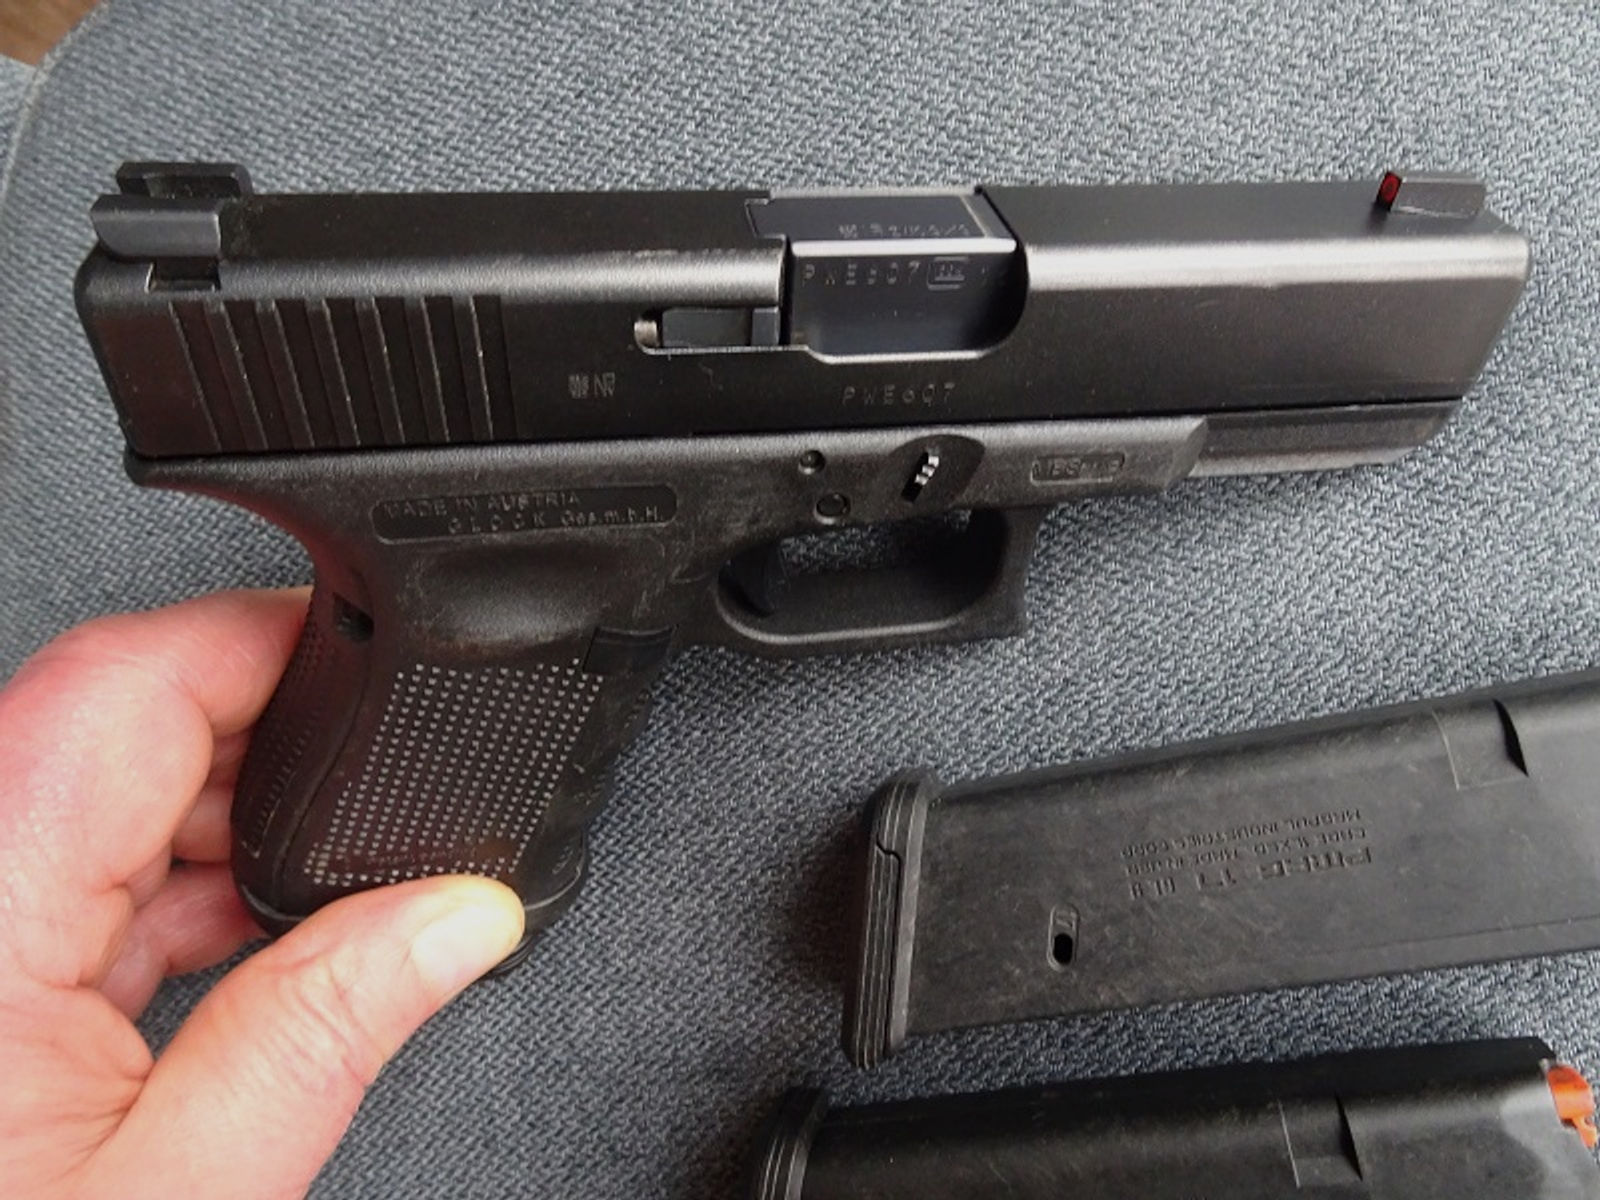 Halbautom. Pistole Glock, Modell 19, Gen 4, Kal. 9mm Luger